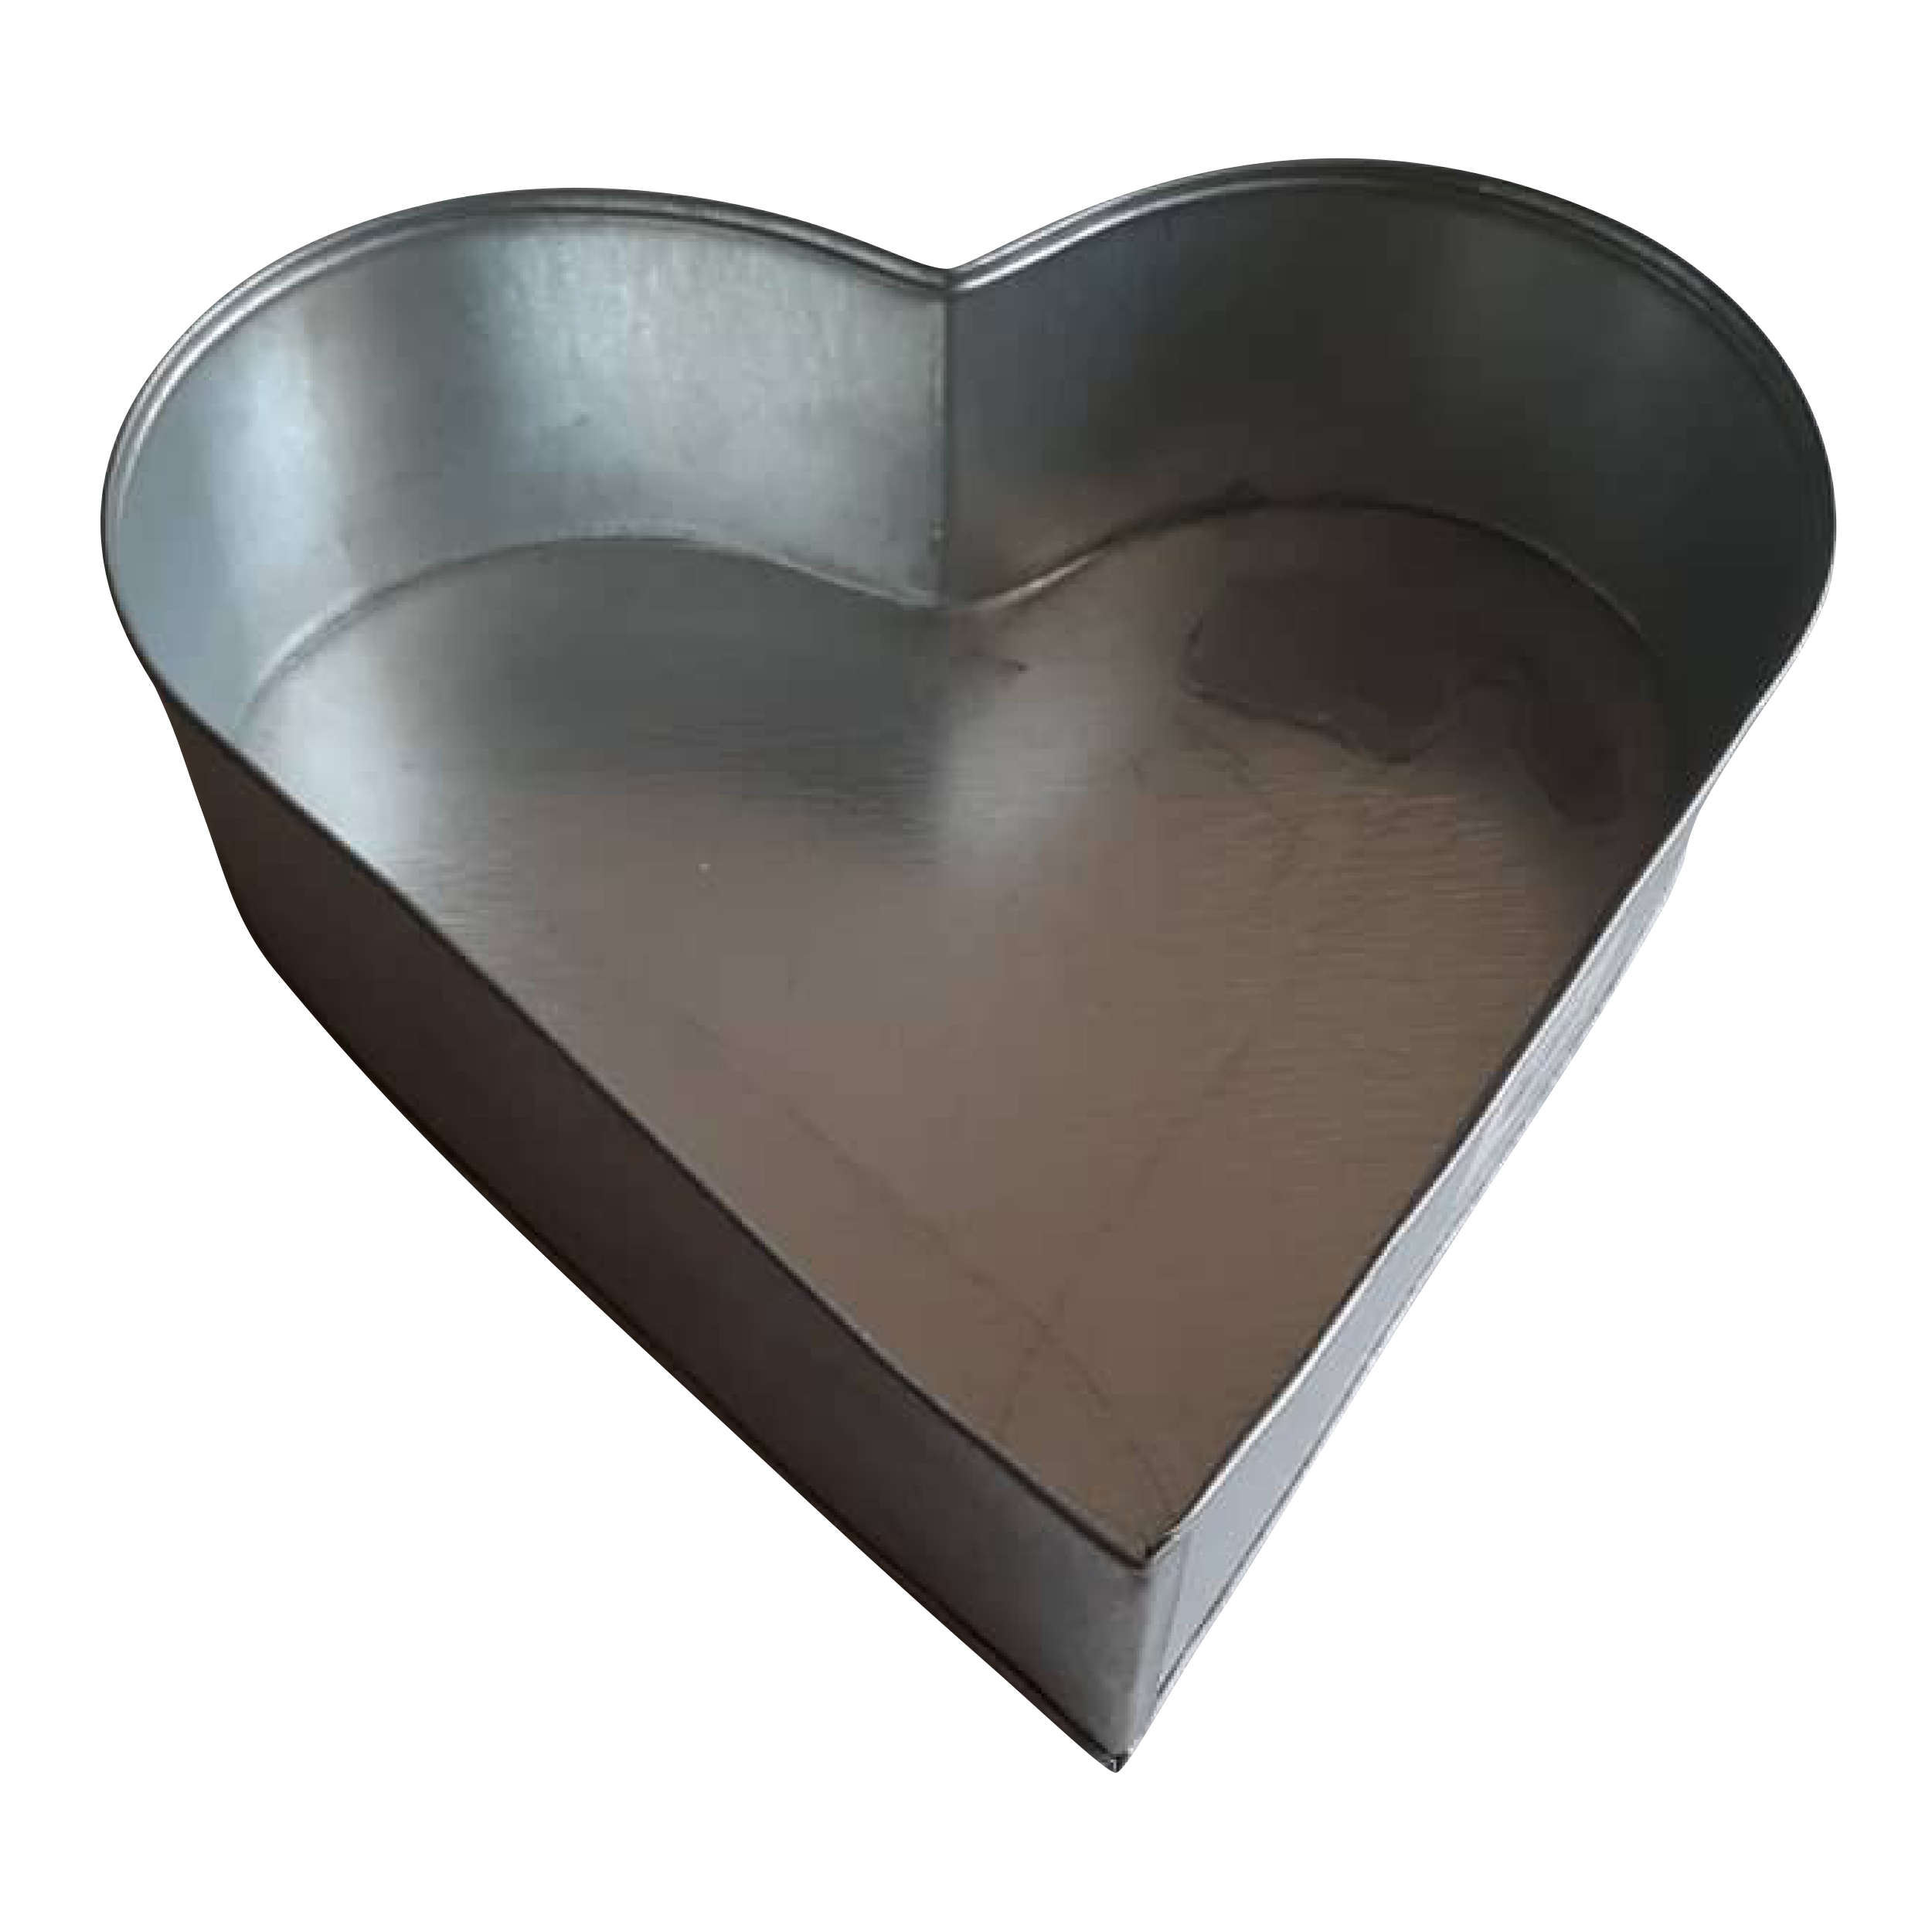 قالب کیک طرح قلب مدل pe142